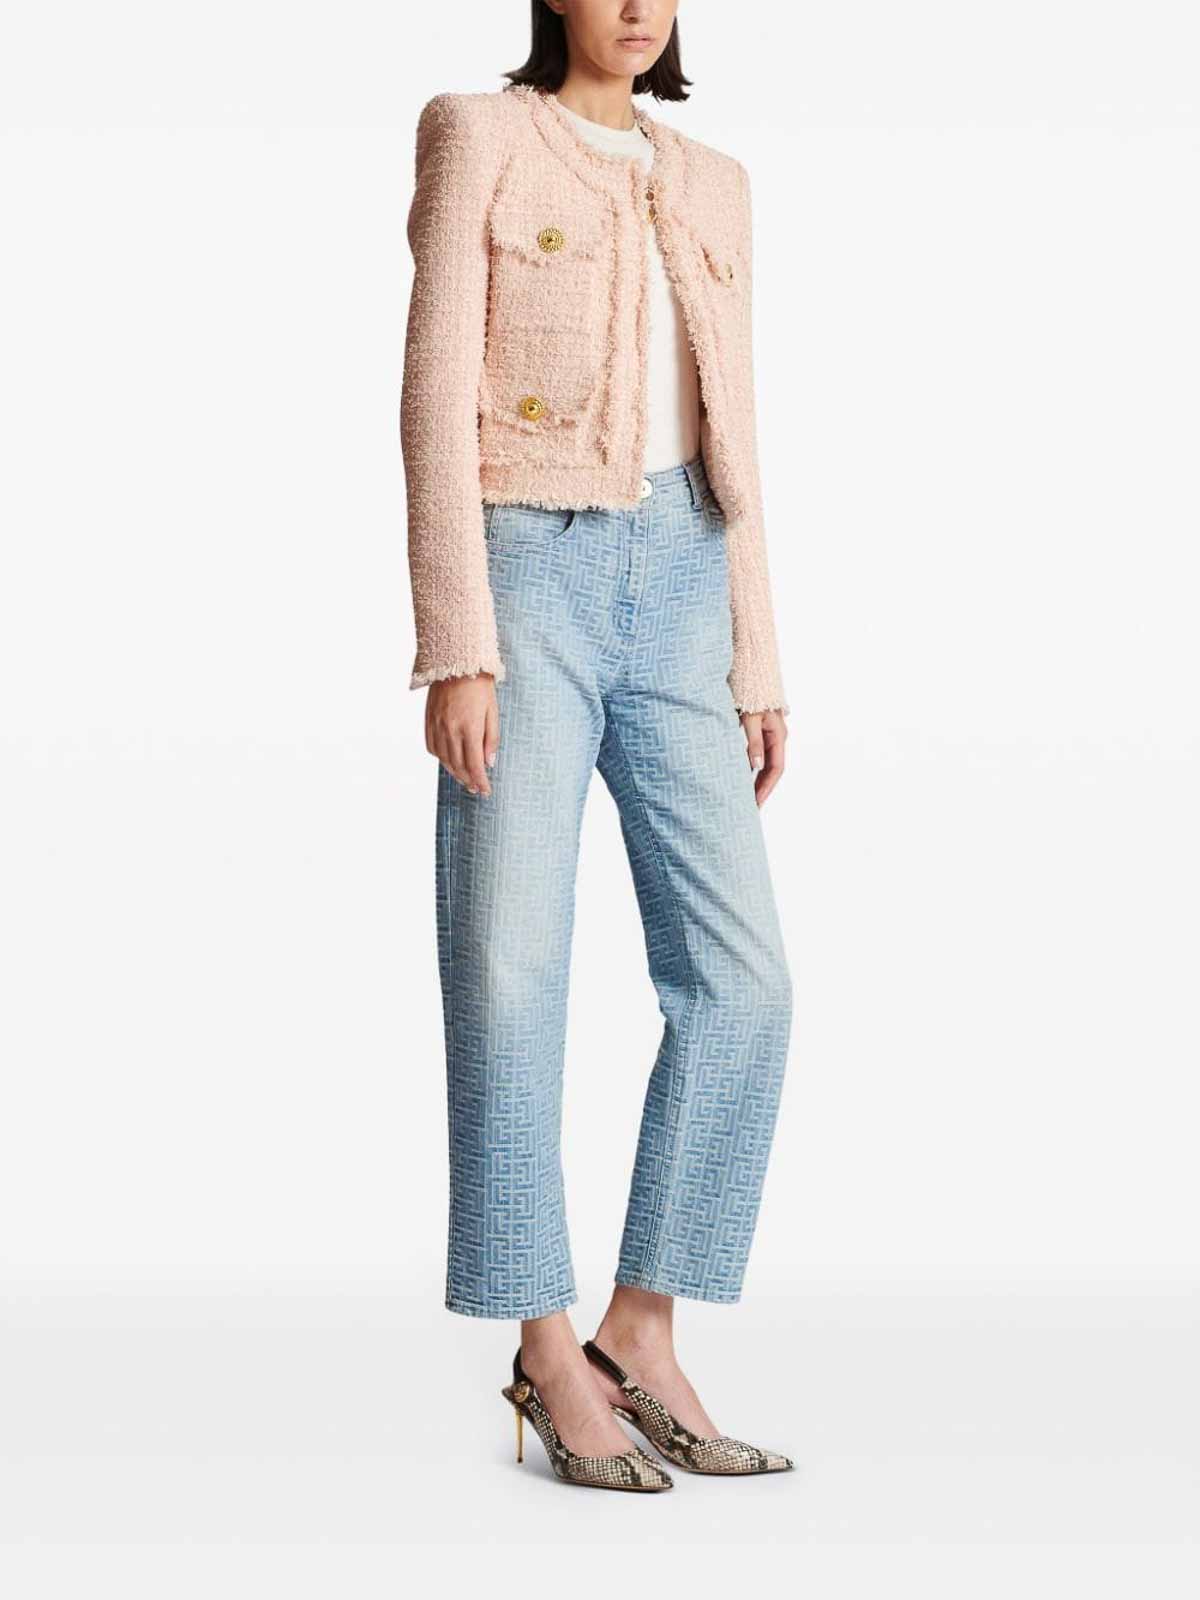 Shop Balmain Tweed Collarless Jacket In Light Pink